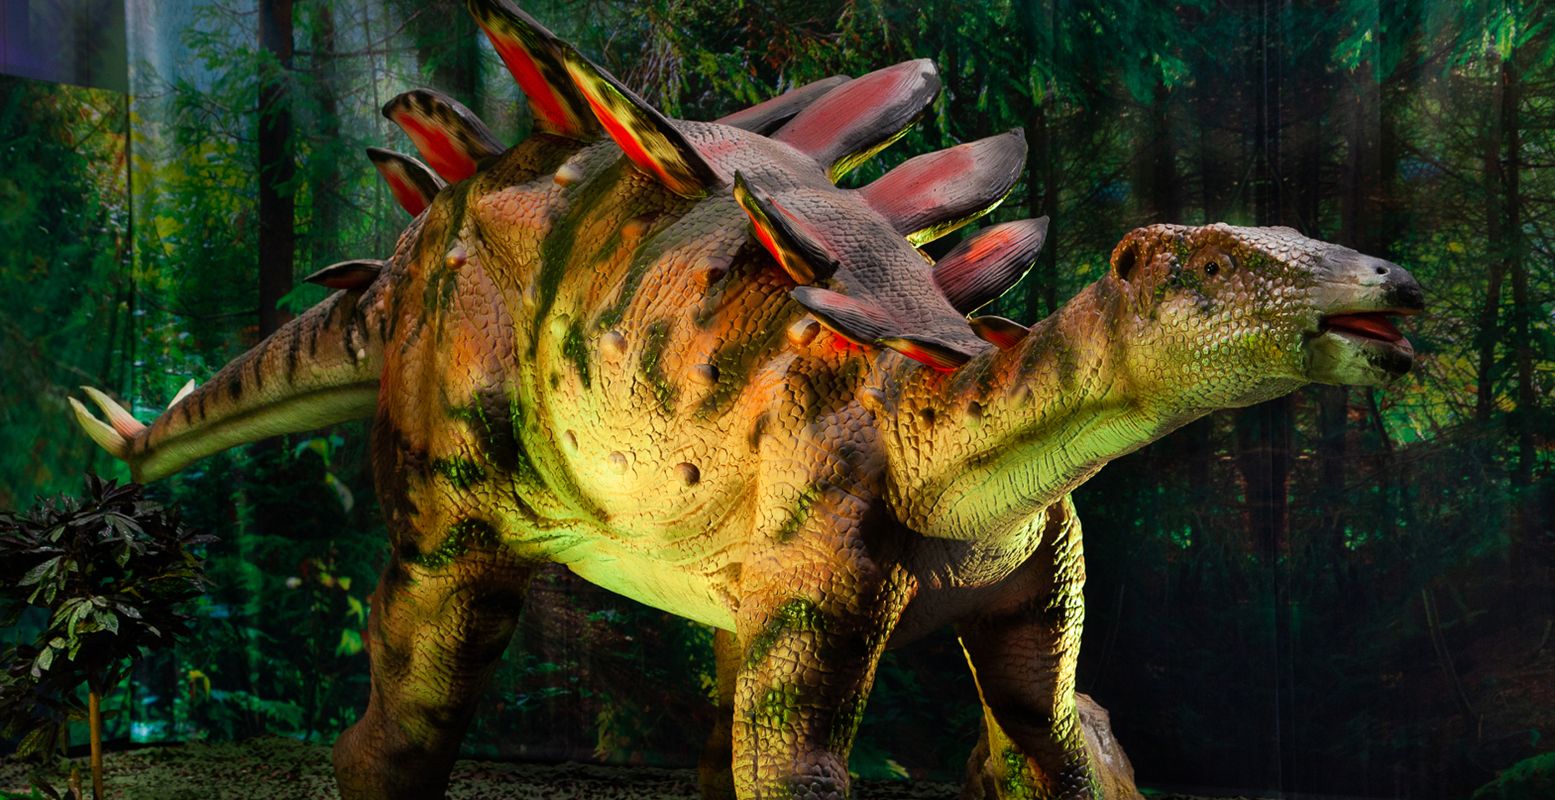 Spot levensechte dino's en leer alles over deze mythische dieren. Foto: World of Dinos